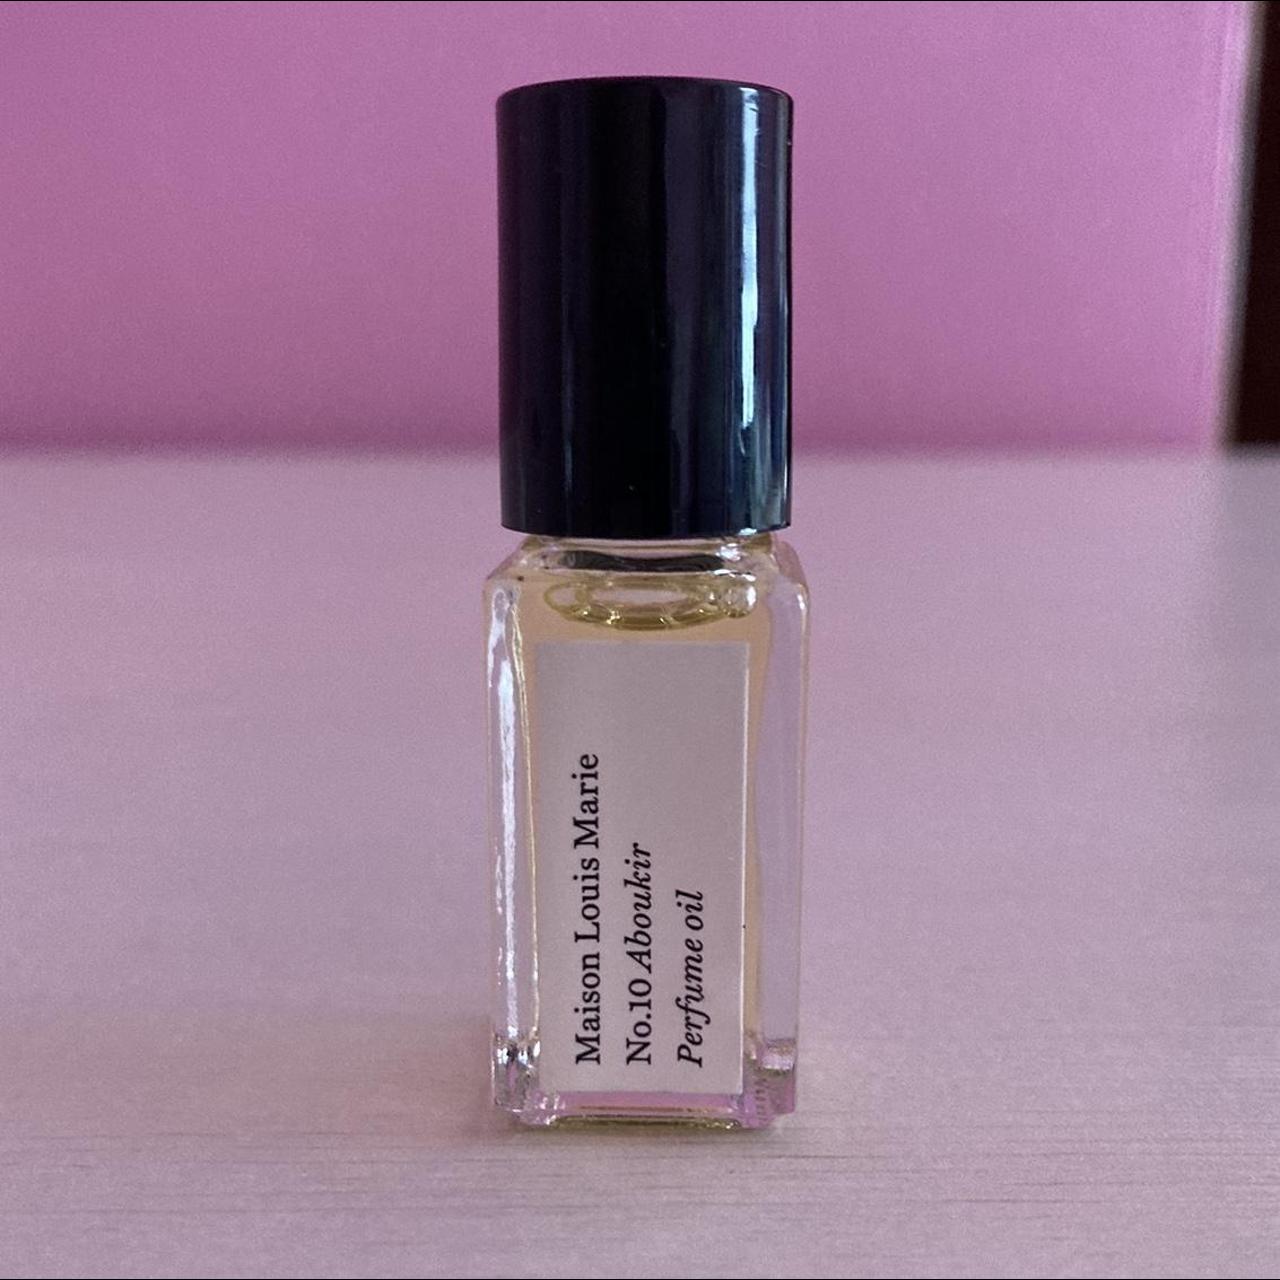 Maison Louis Marie, Aboukir, mini oil parfum, never... - Depop